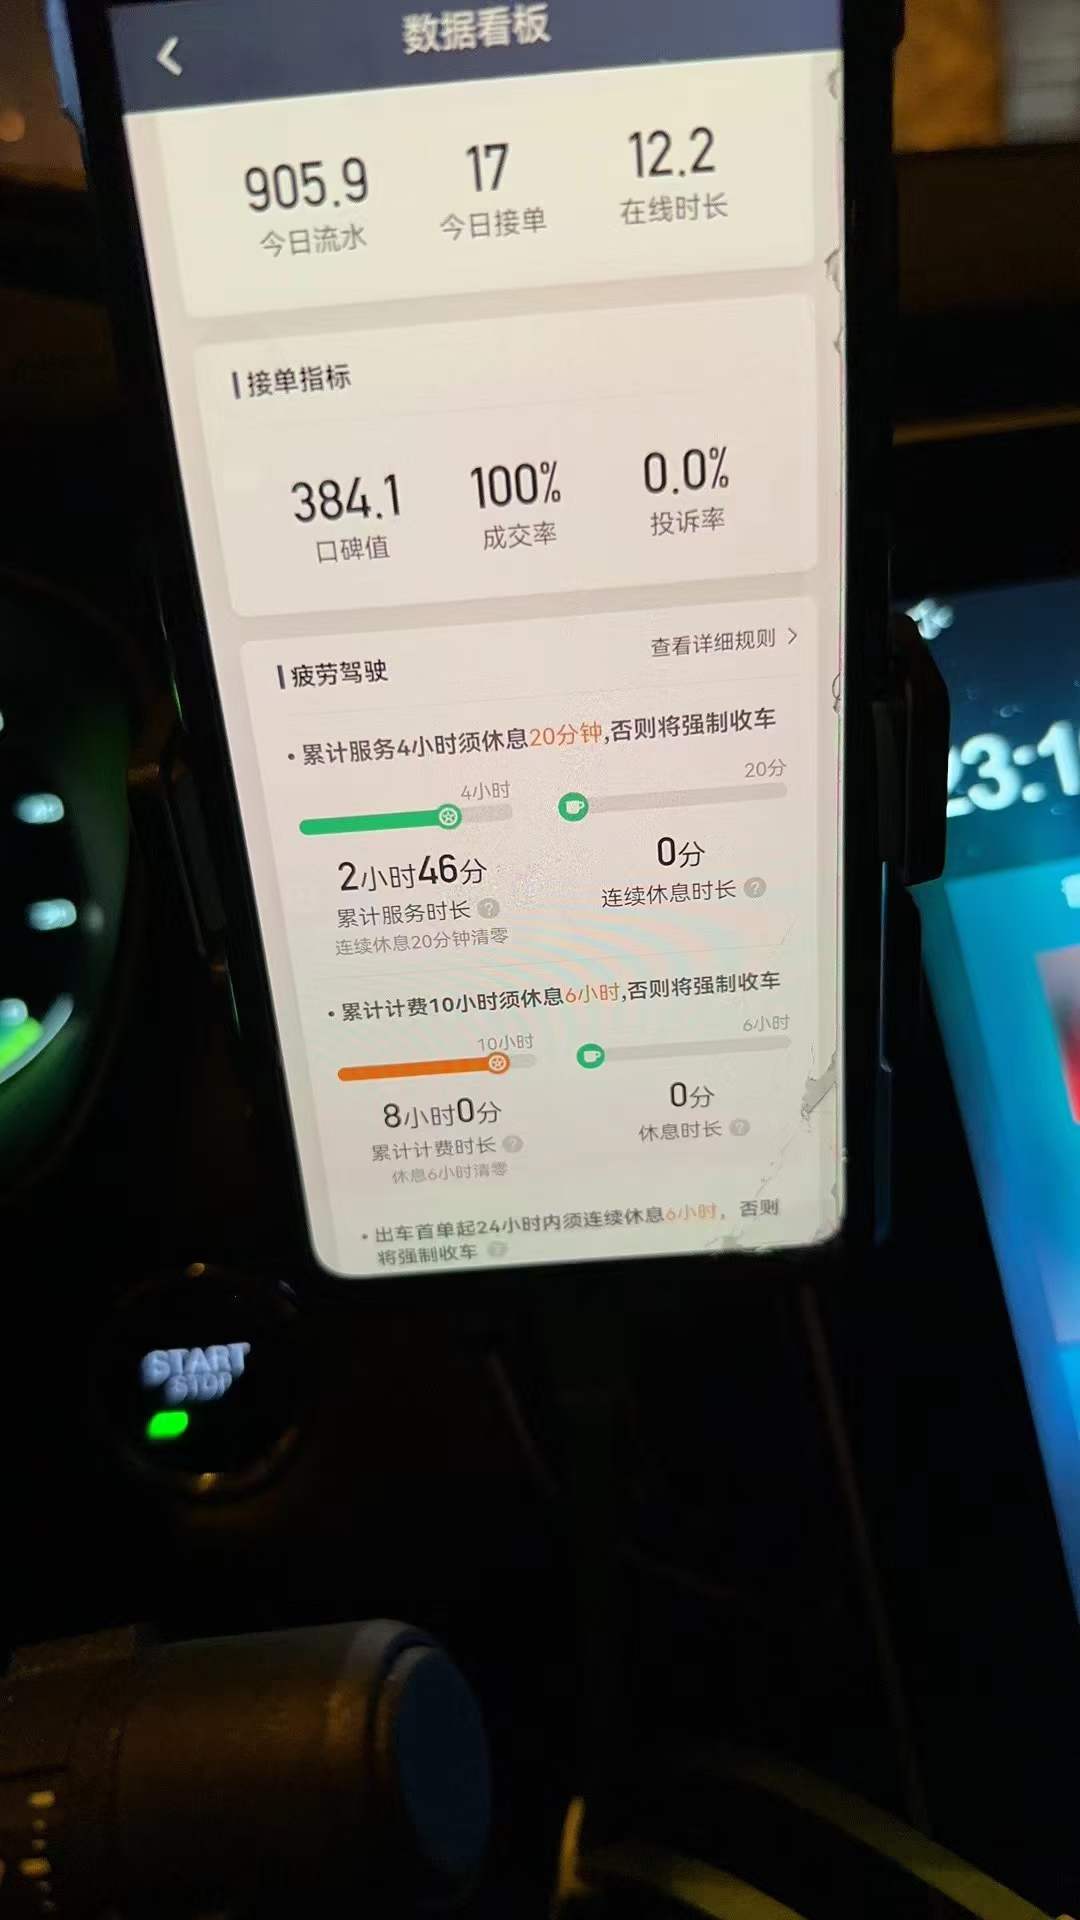 主变量上海网约车是起步价怎么样内幕曝光